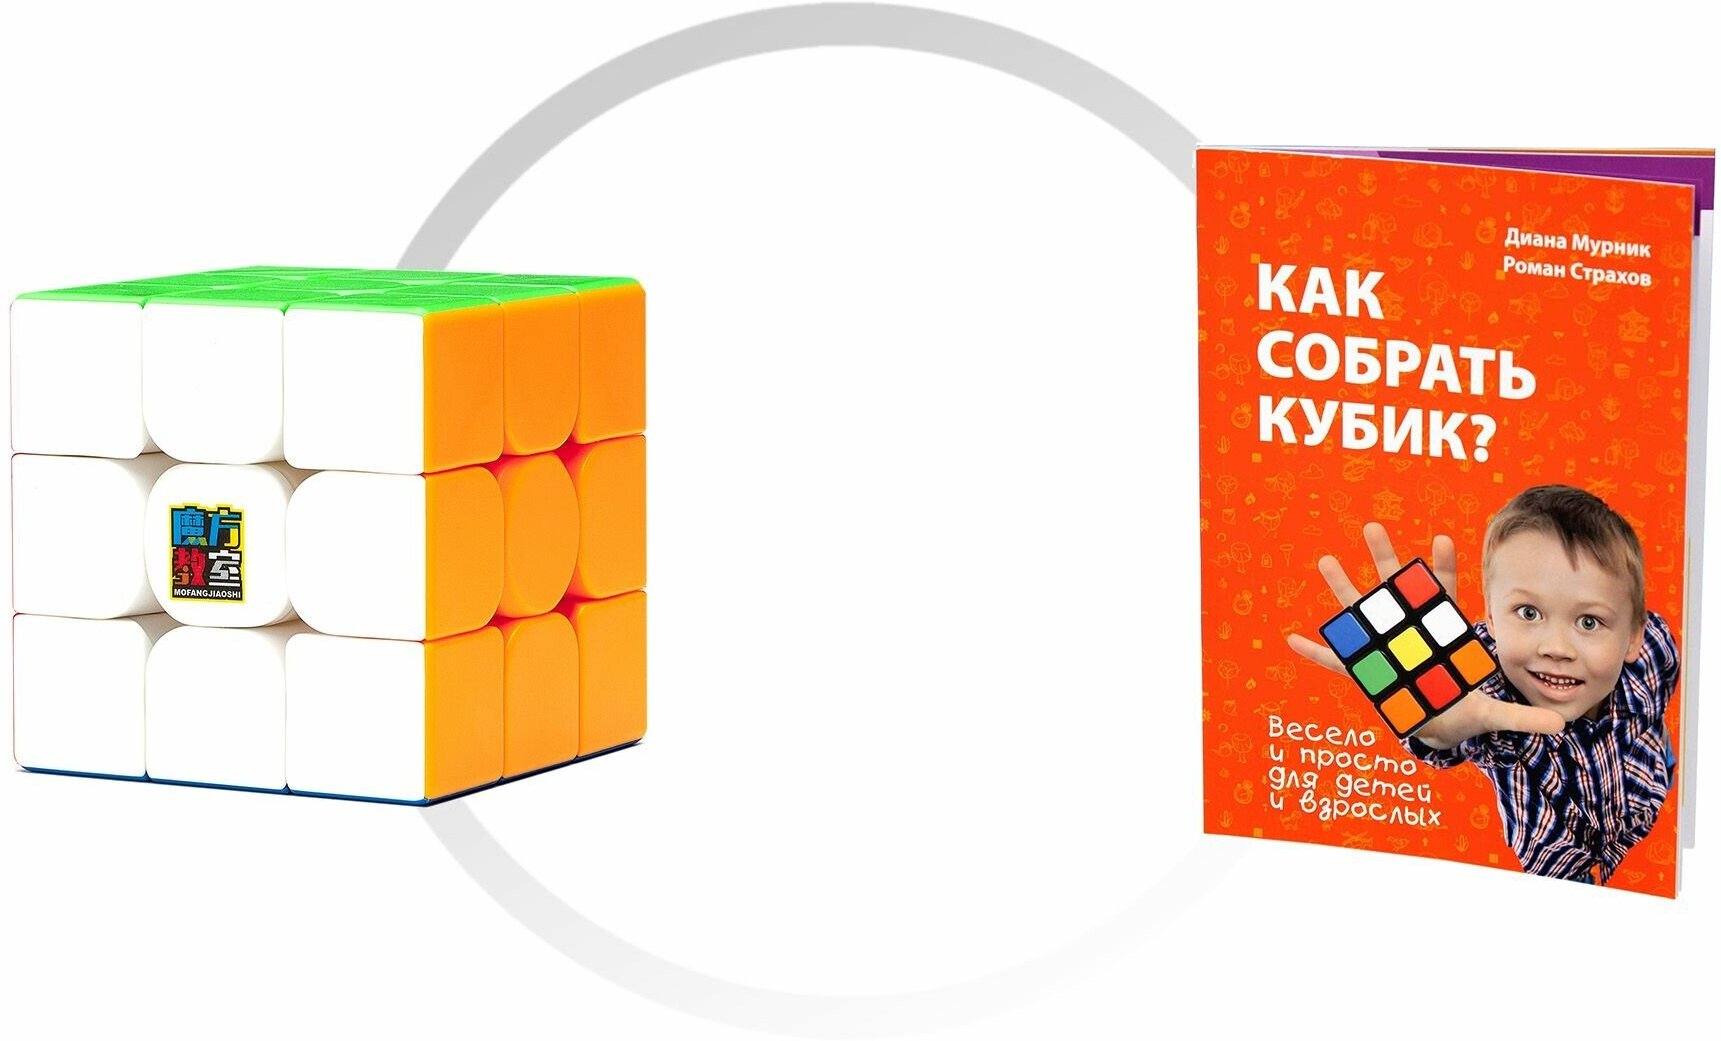 Комплект кубик Рубика магнитный скоростной MoYu MeiLong 3M + книга "Как собрать кубик?"